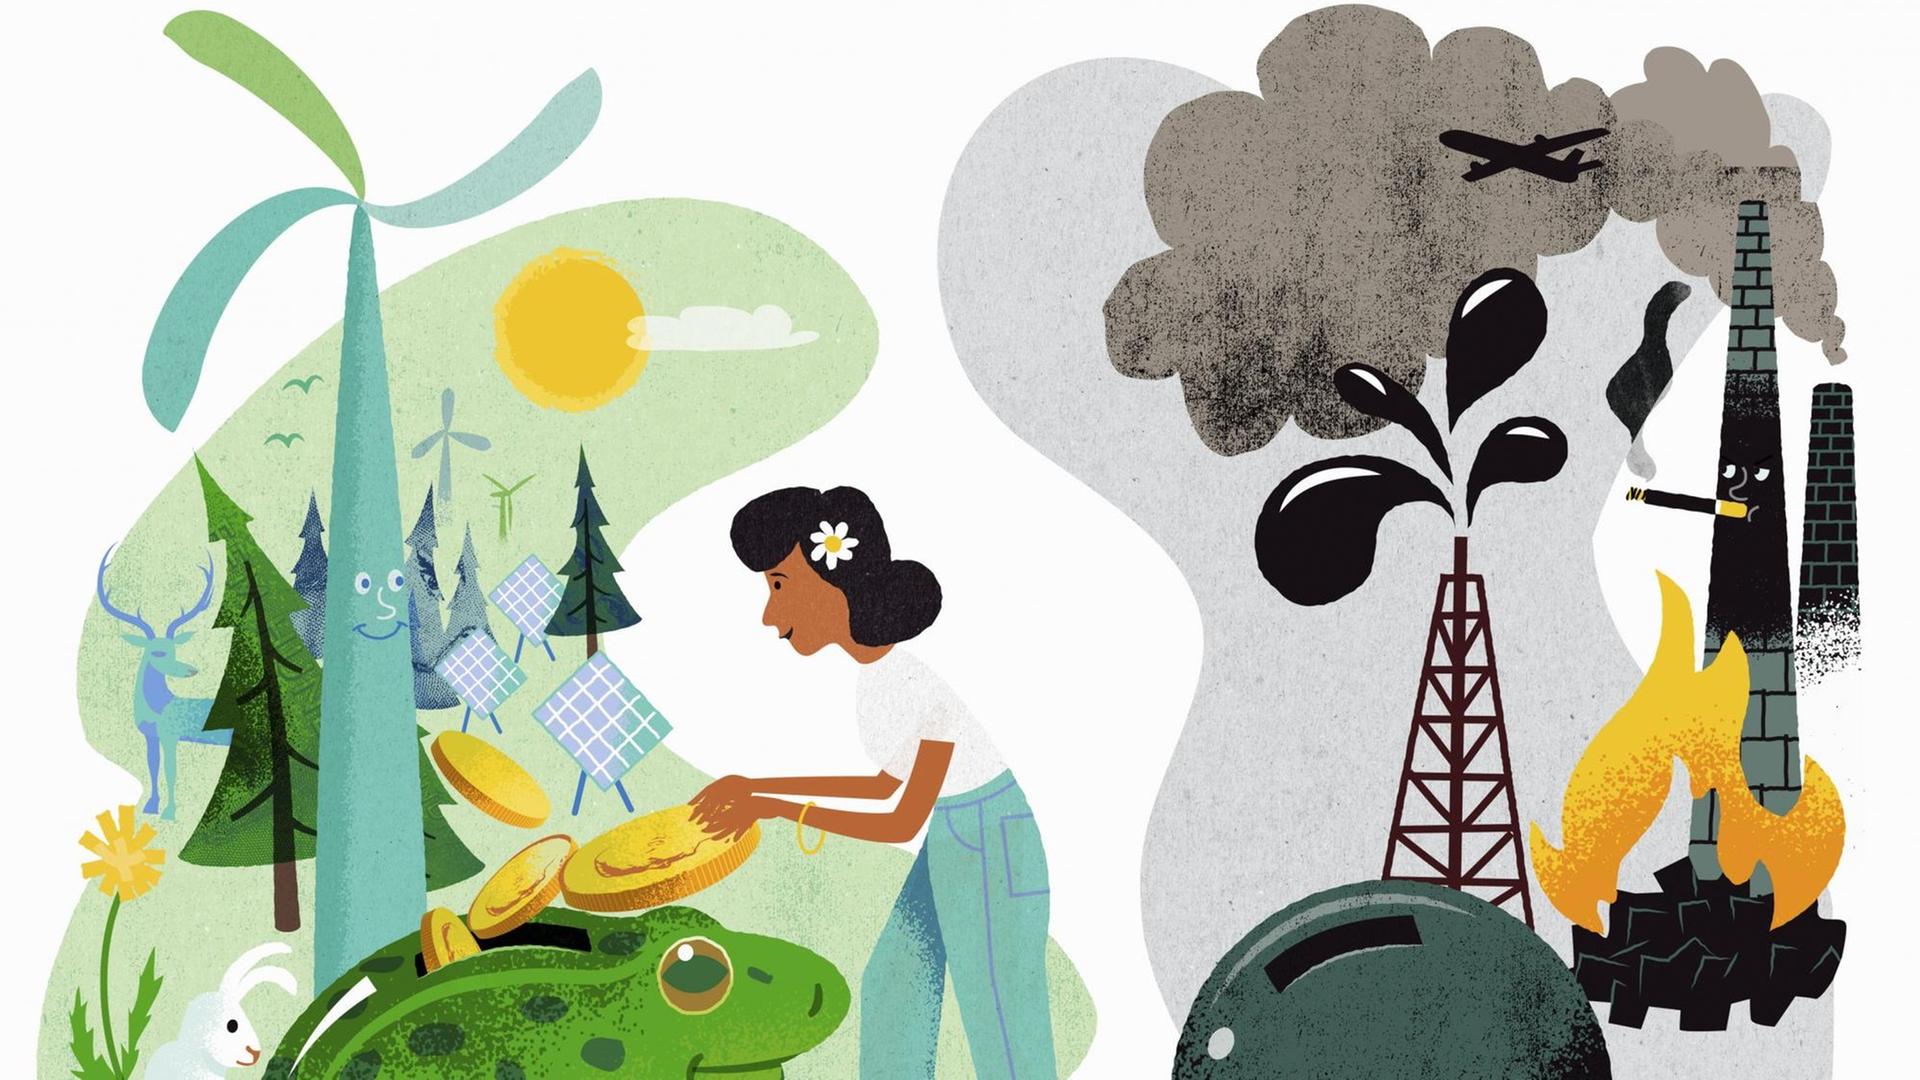 Eine kleinteilige Illustration stellt verschiedene Aspekte mit dem Umgang der Umwelt dar. Windrad, Wald und Solarzellen stehen Flugzeug, rauchendem Schornstein und einer Kanonenkugel gegenüber.